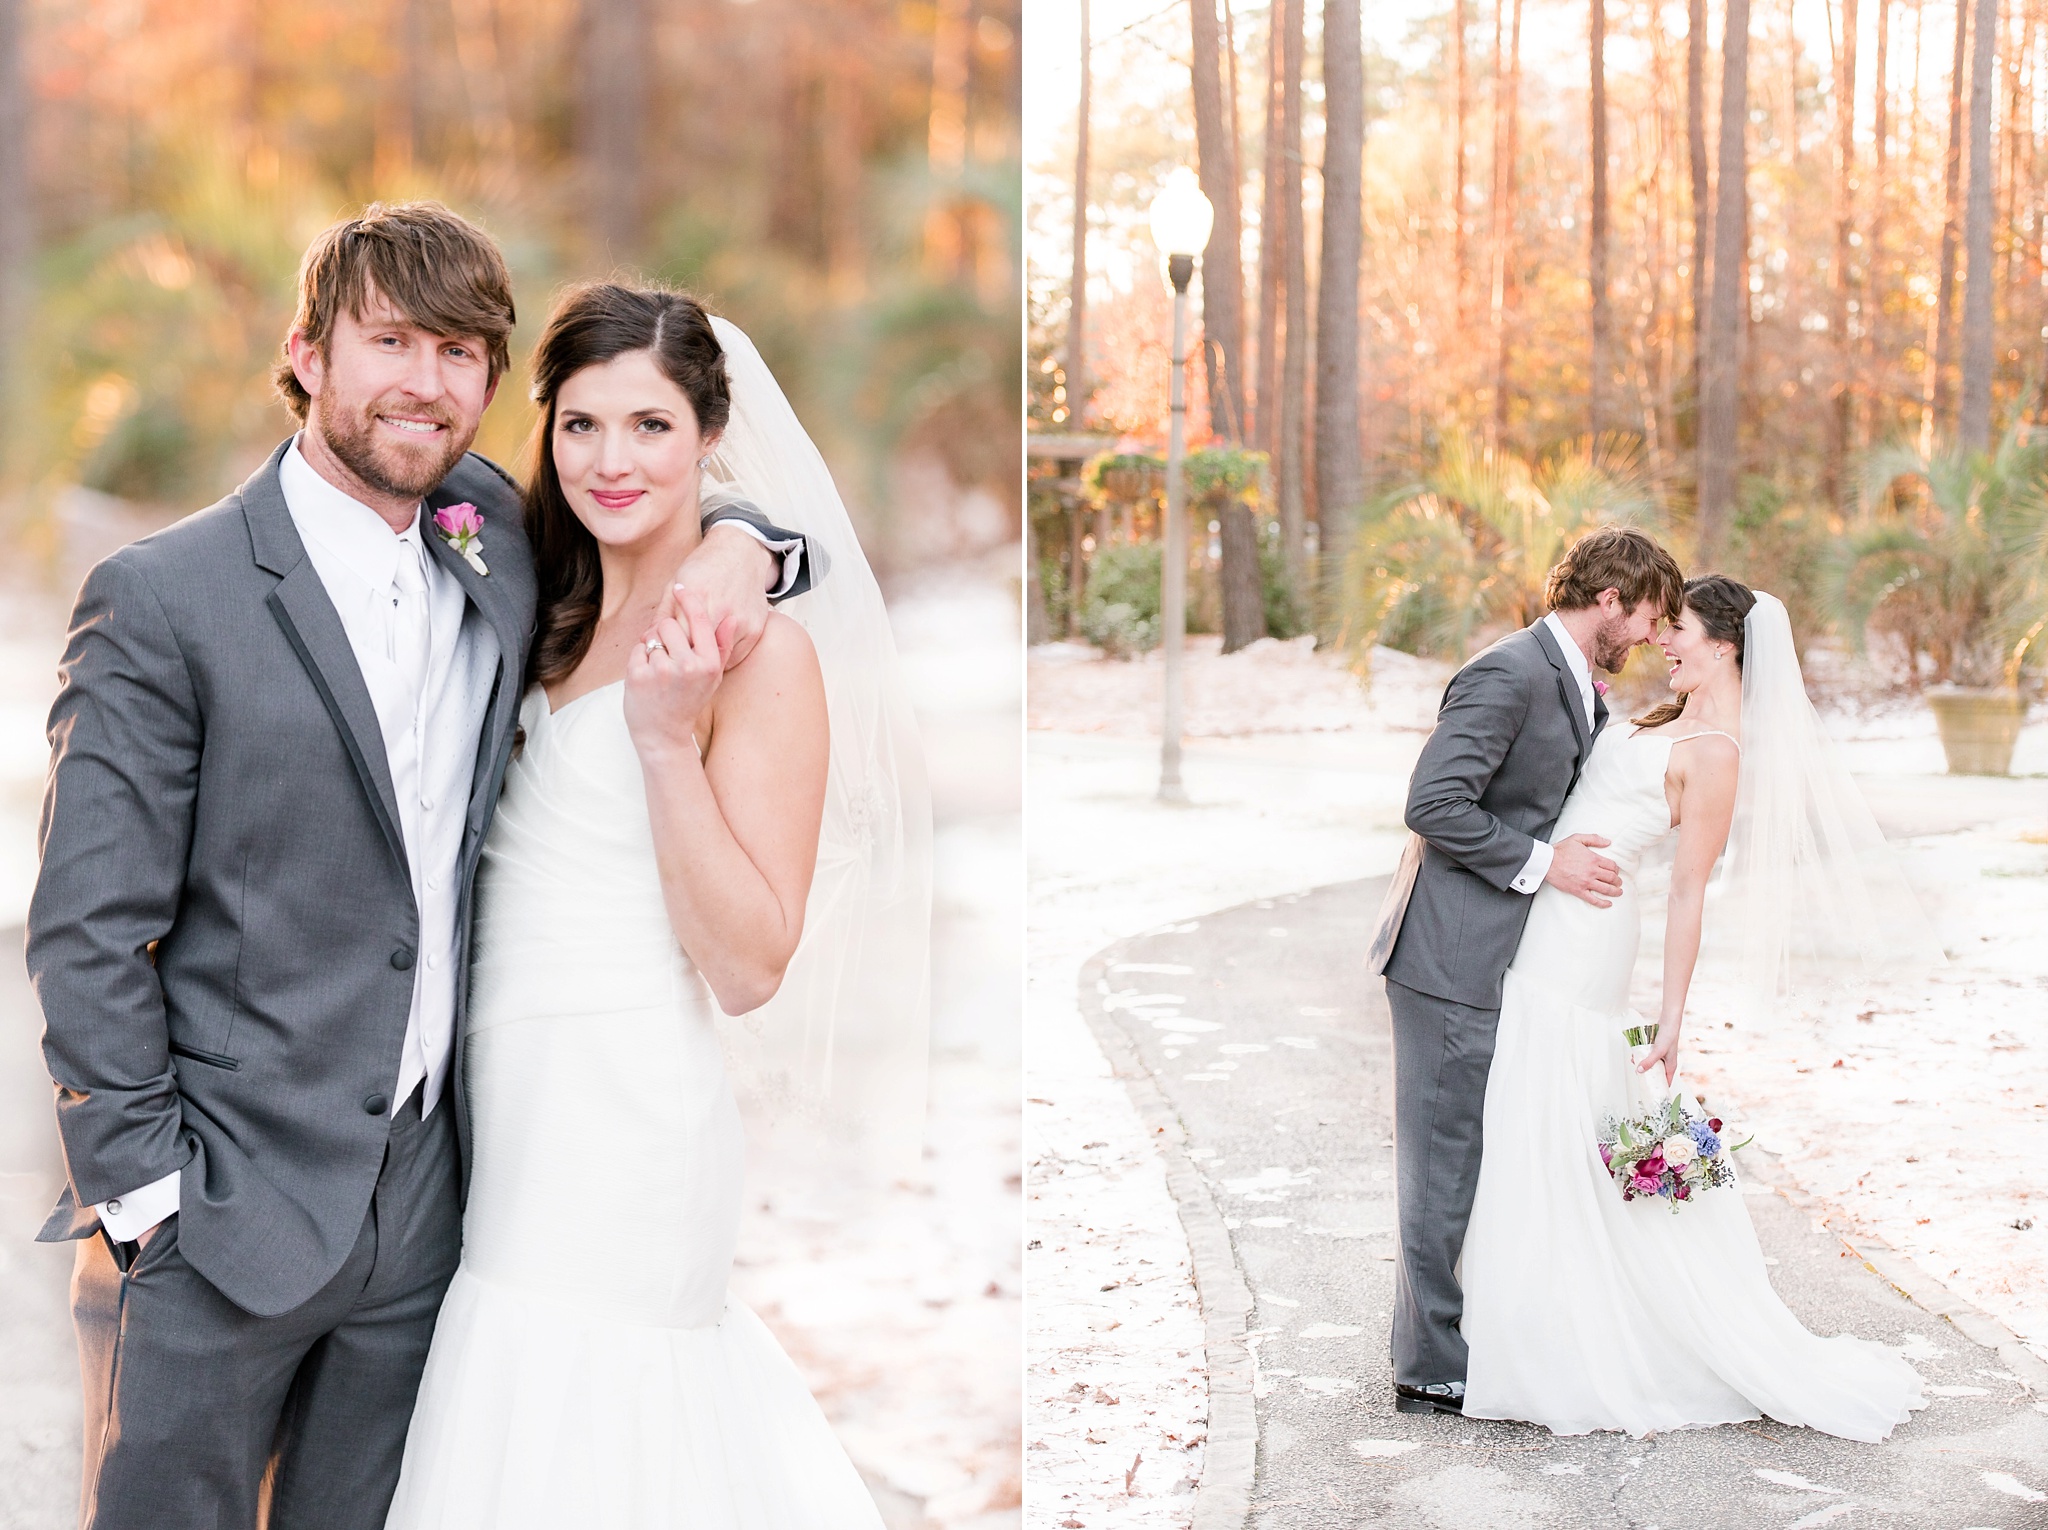 Snowy Winter Aldridge Gardens Wedding | Birmingham Alabama Wedding Photographers_0043.jpg